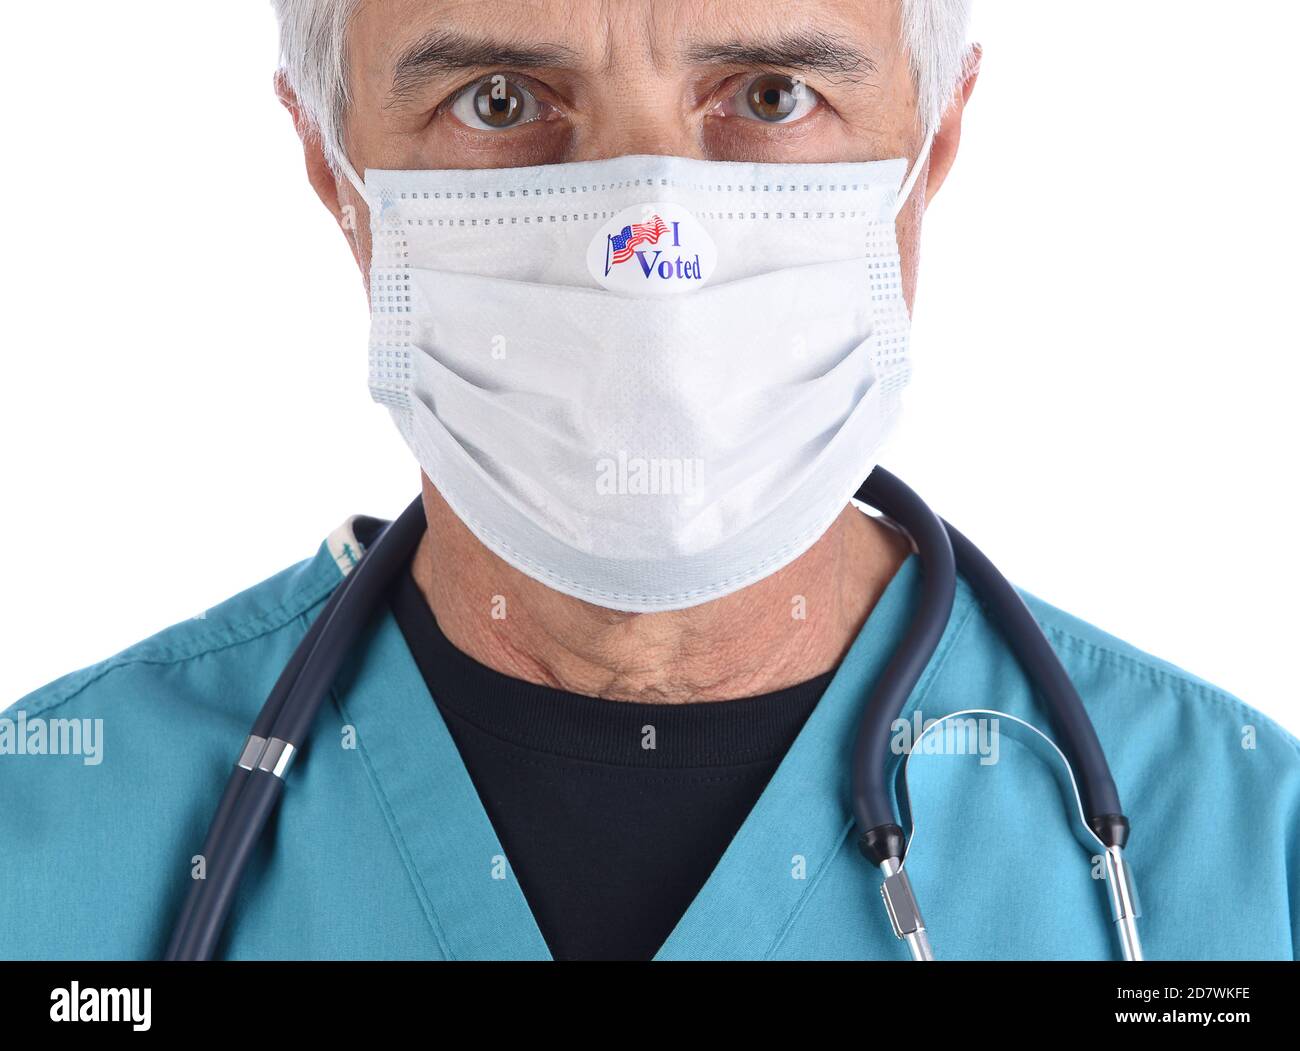 Gros plan d'un médecin portant un autocollant J'ai voté sur le masque de protection COVID-19 qu'il portait pour voter. L'homme porte des exfoliants chirurgicaux avec un stéthoscope. Banque D'Images